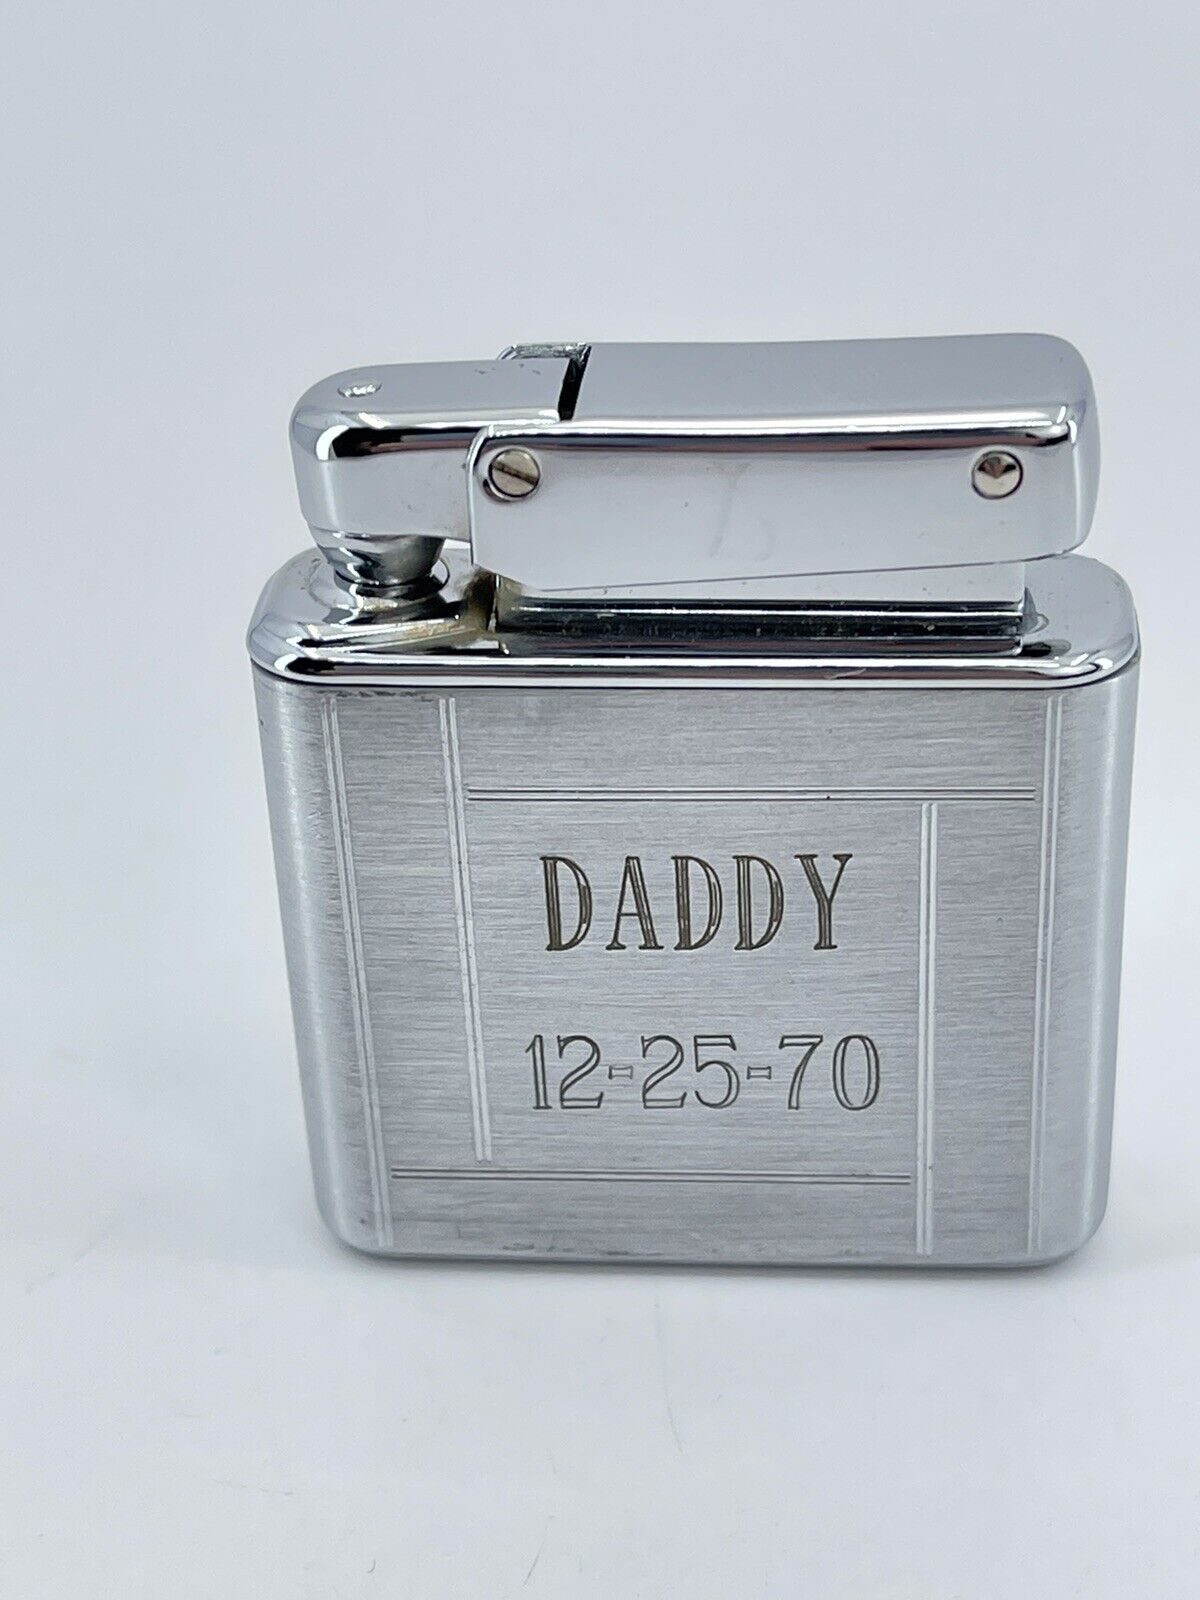 Vintage Kreisler Butane Lighter monogram etched name Daddy silver tone works